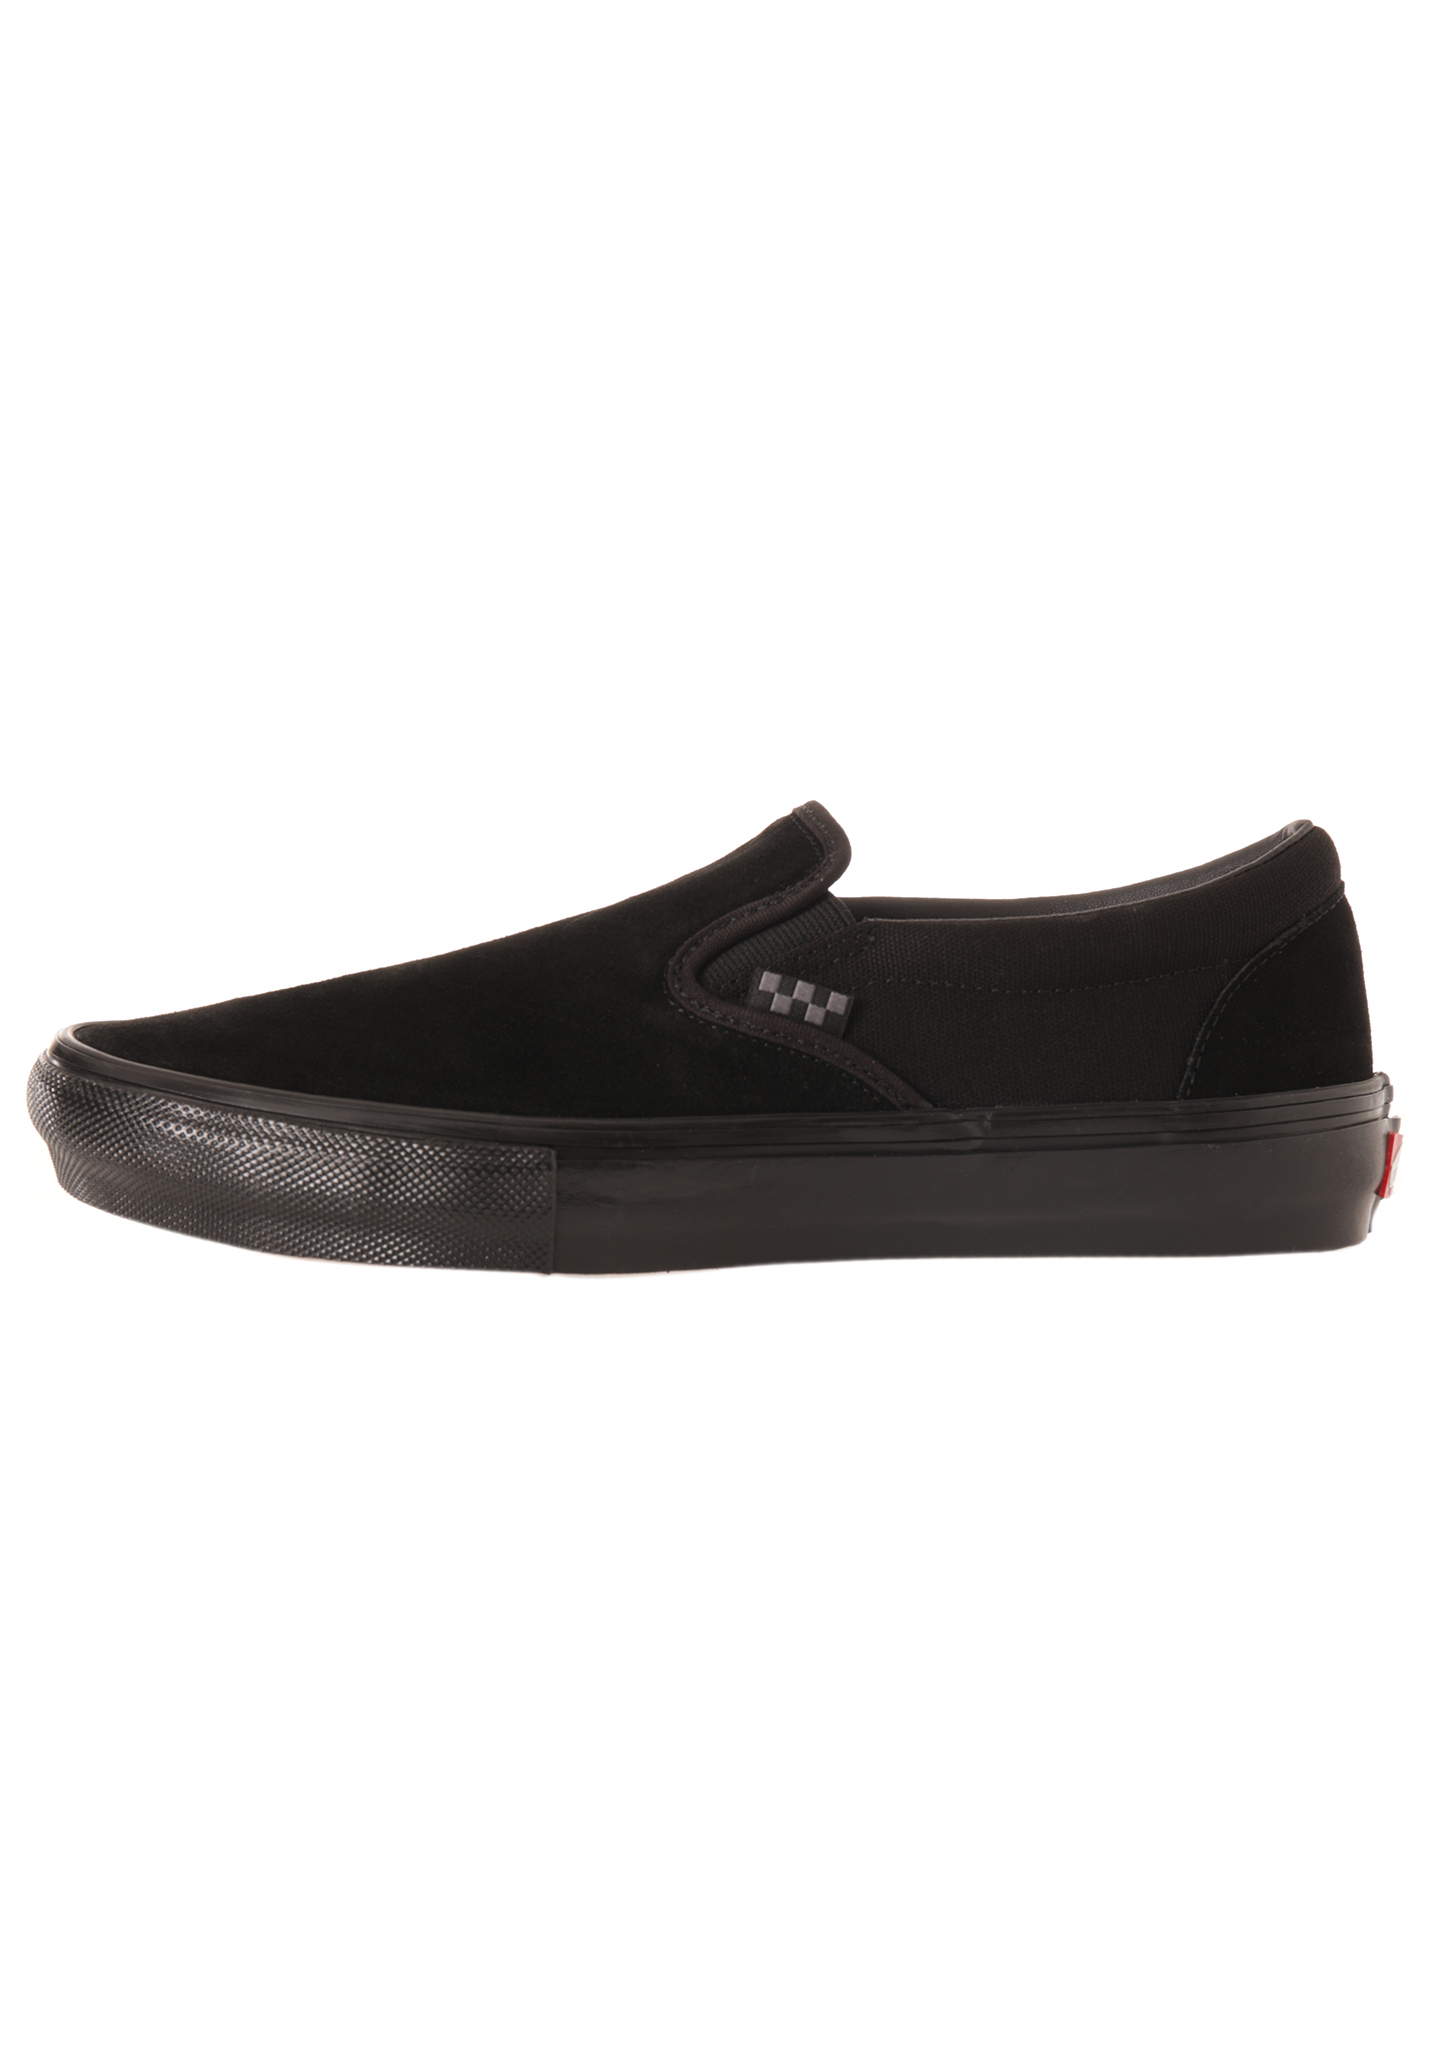 Vans Skate Slip-On Slip-ons black/black 40,5